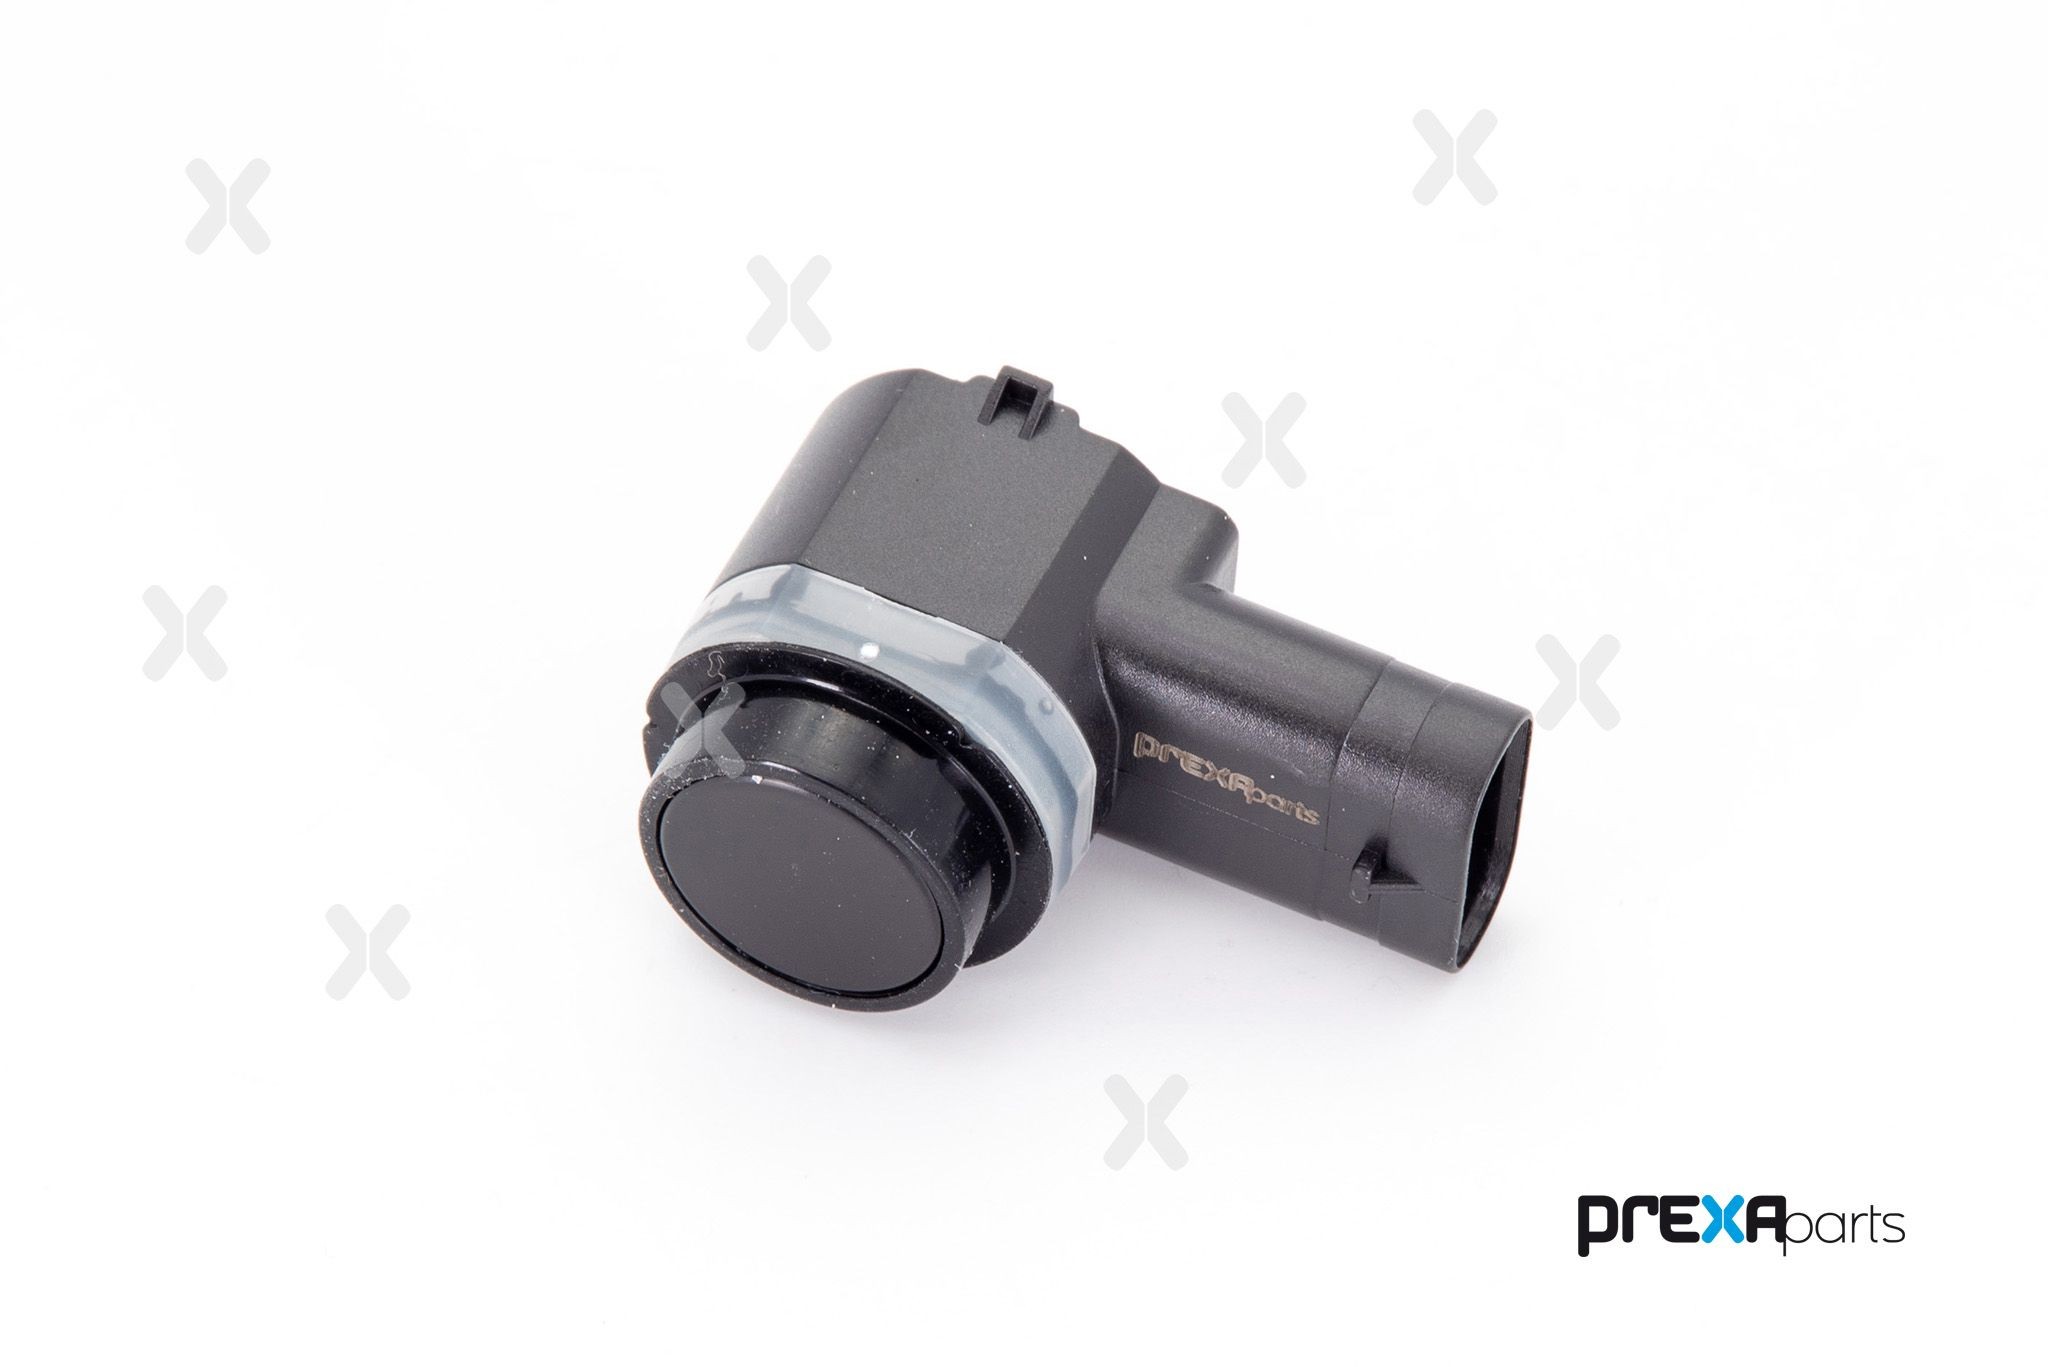 PREXAparts P603008 Parking sensor 4452559